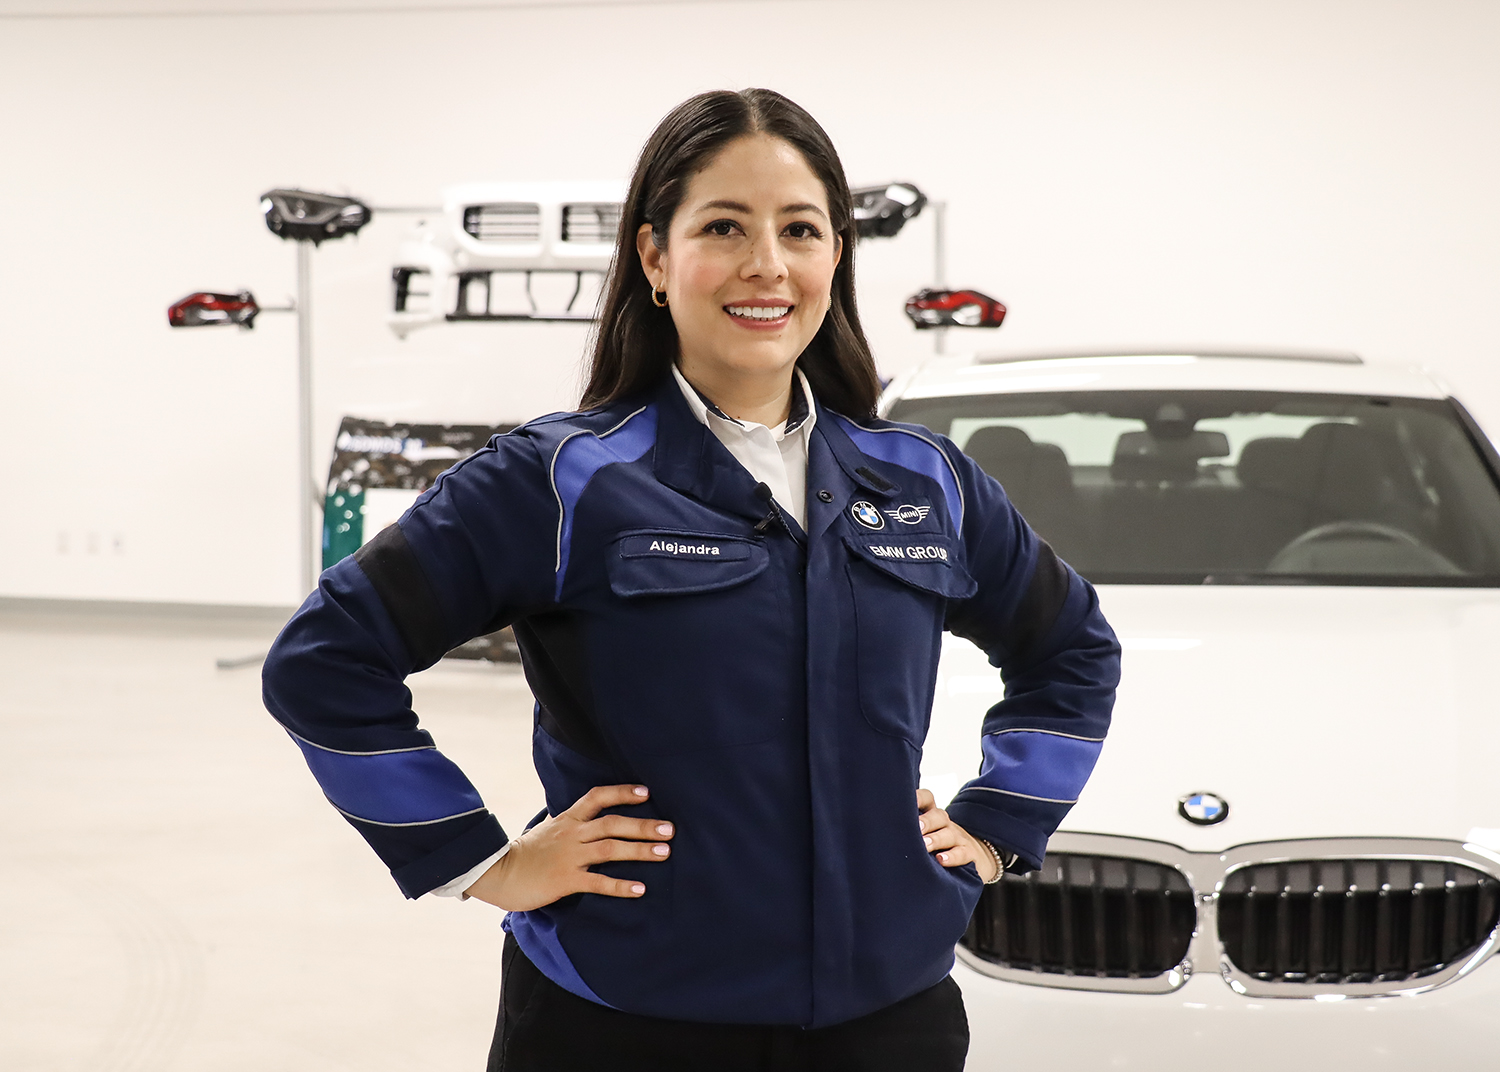 Alejandra, BMW Group employee